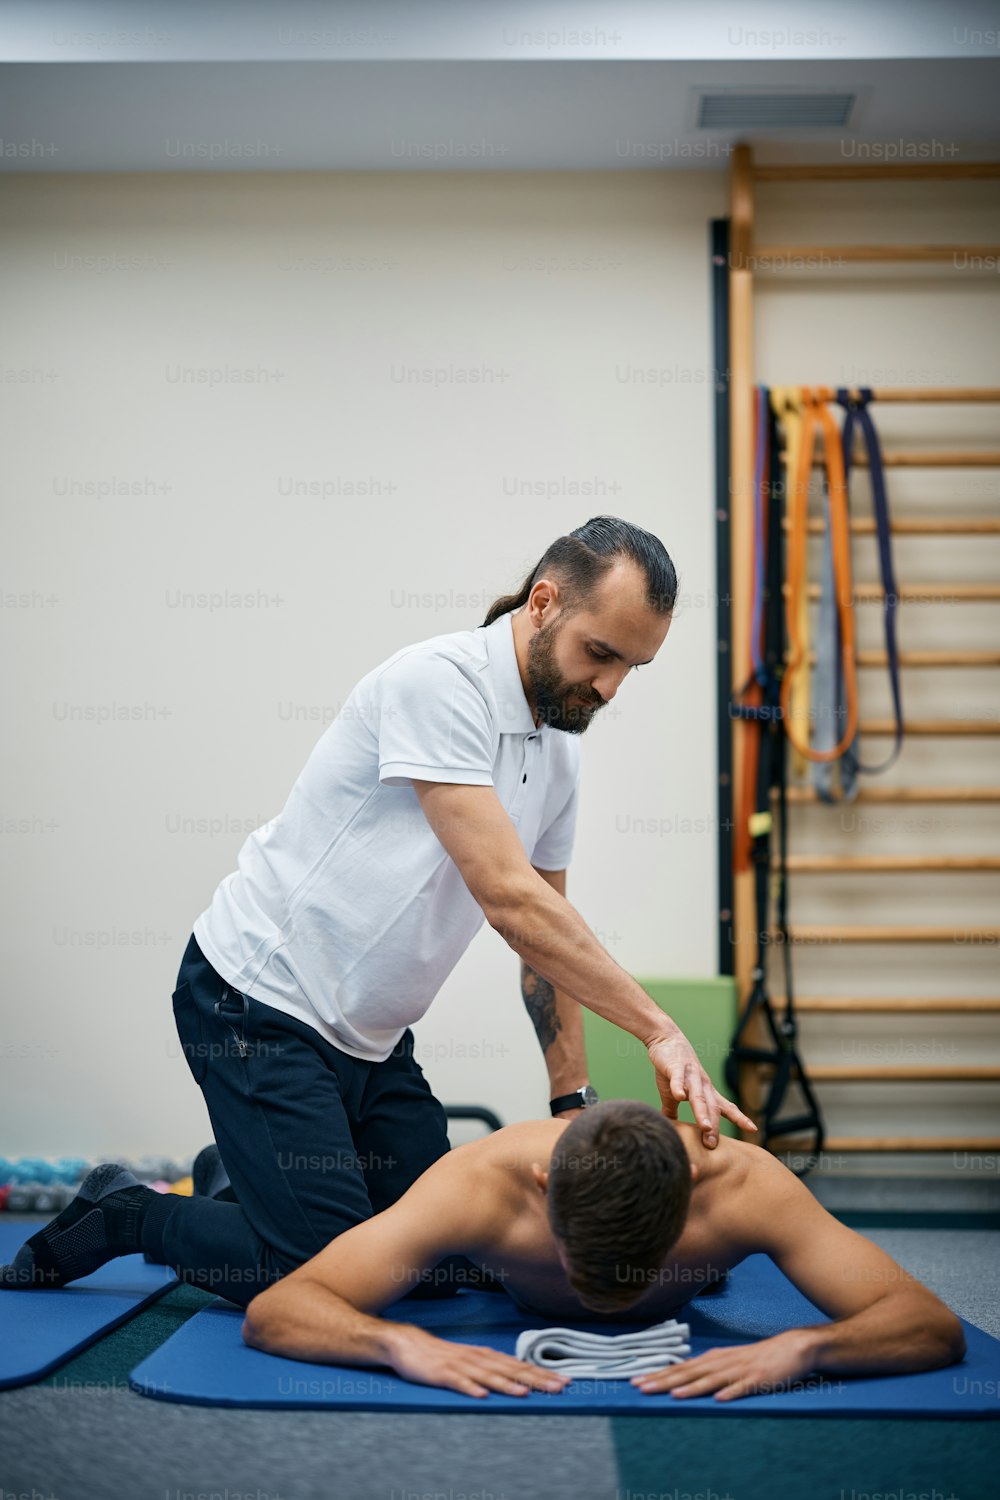 Physiotherapeut massiert den Rücken eines Sportlers während der Therapie im Rehabilitationszentrum.